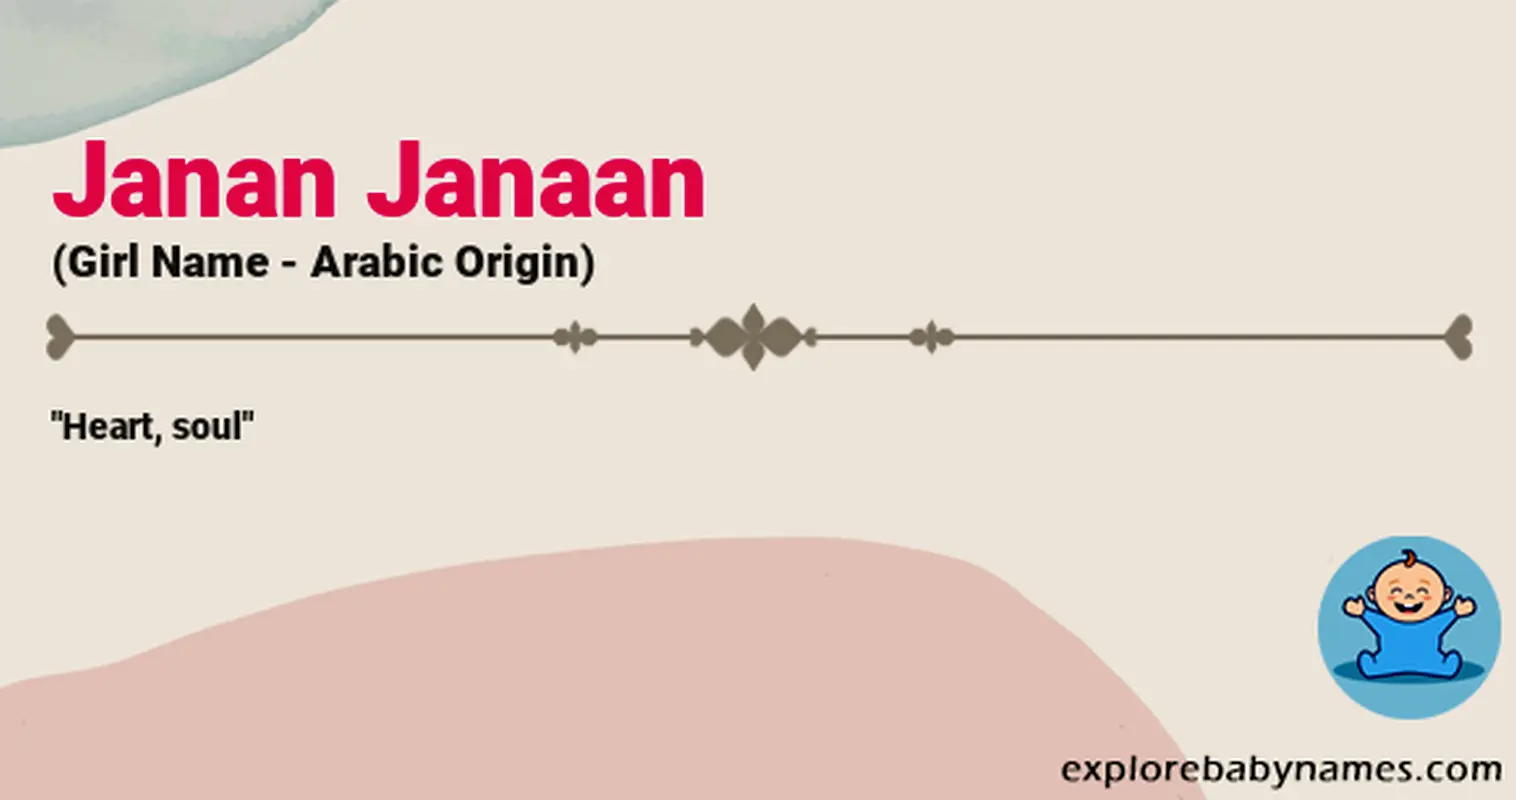 Meaning of Janan Janaan